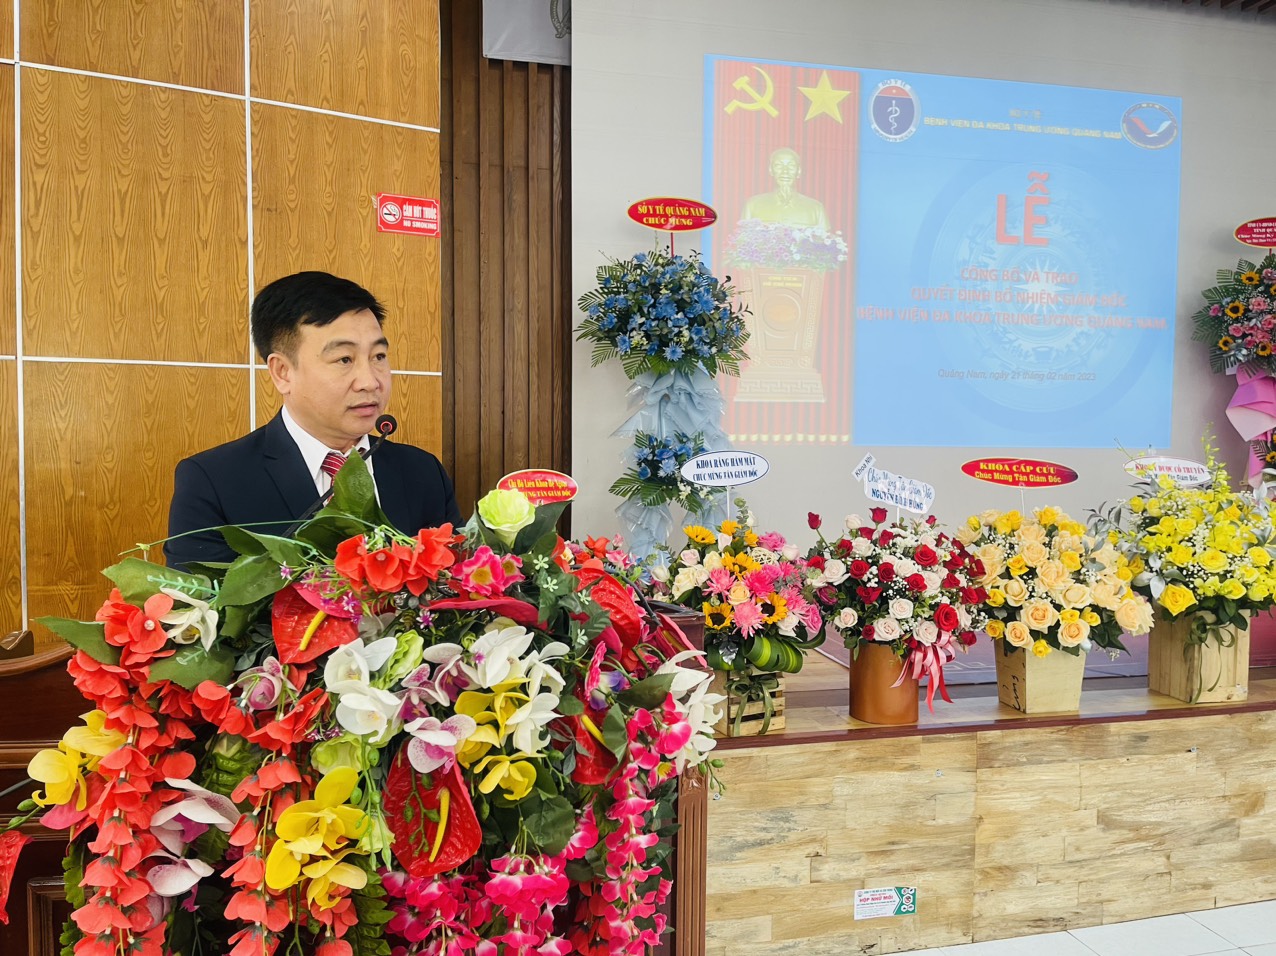 Bộ Y tế bổ nhiệm ông Nguyễn Đình Hùng giữ chức Giám đốc Bệnh viện Đa khoa Trung ương Quảng Nam - Ảnh 1.